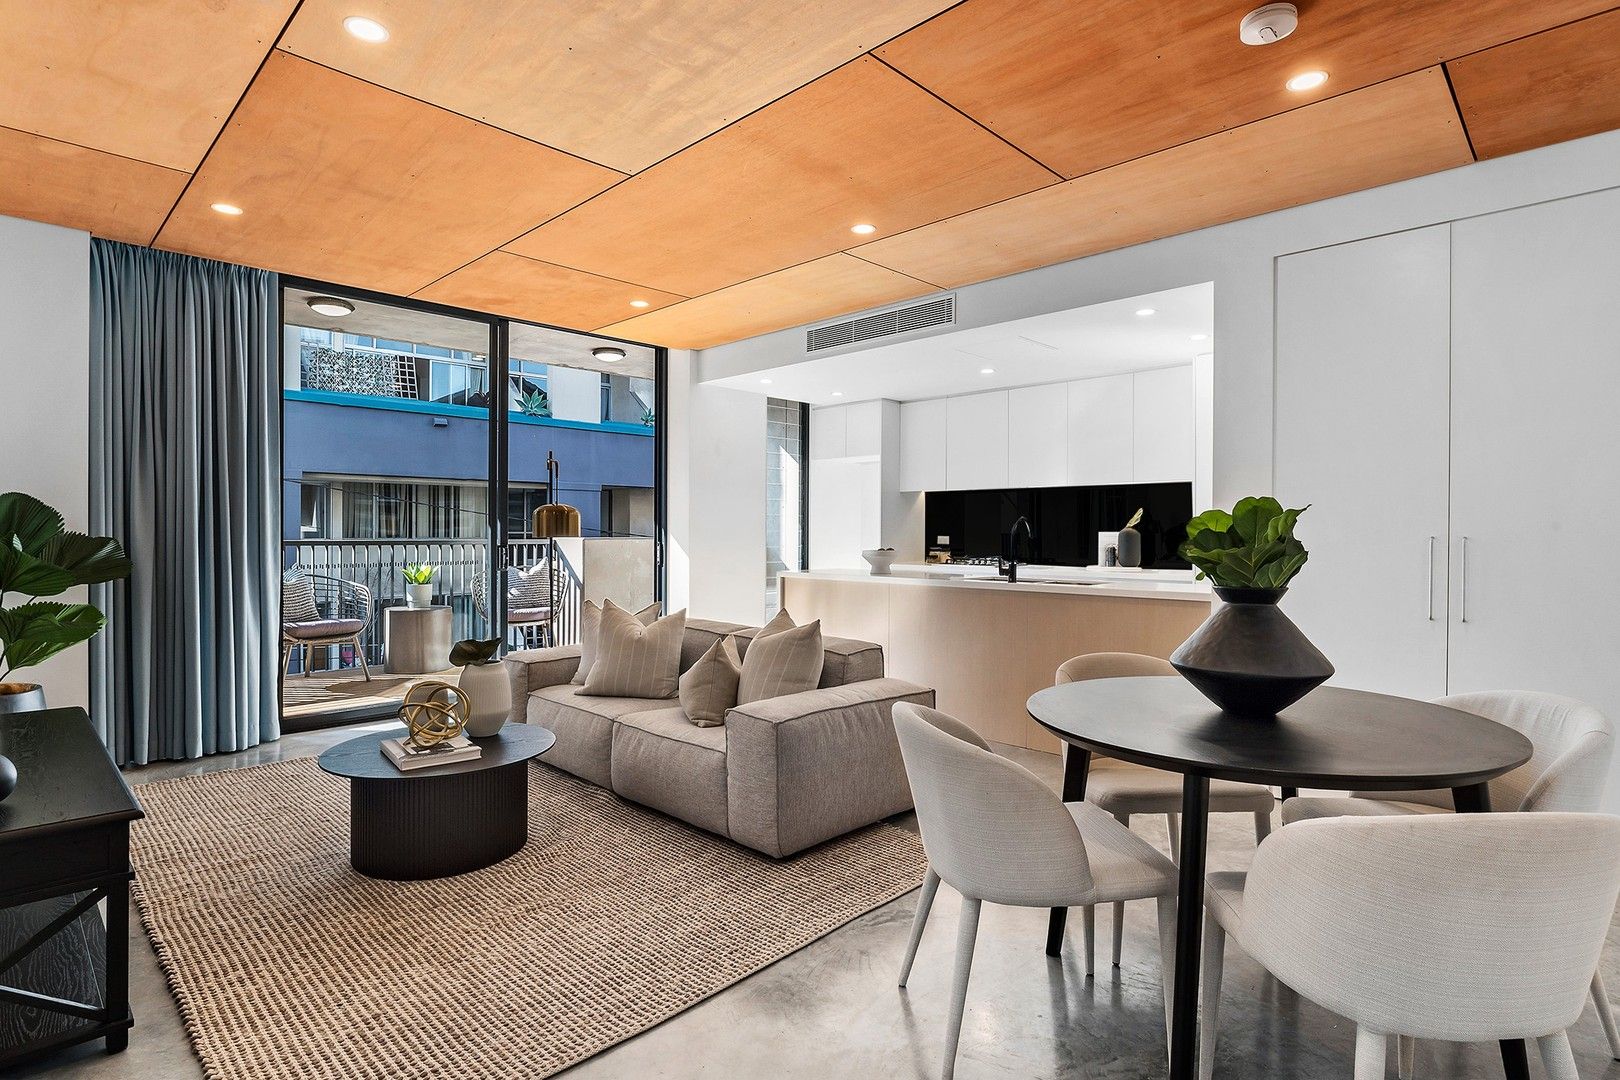 2 bedrooms Apartment / Unit / Flat in 122/12 Marsden Street CAMPERDOWN NSW, 2050